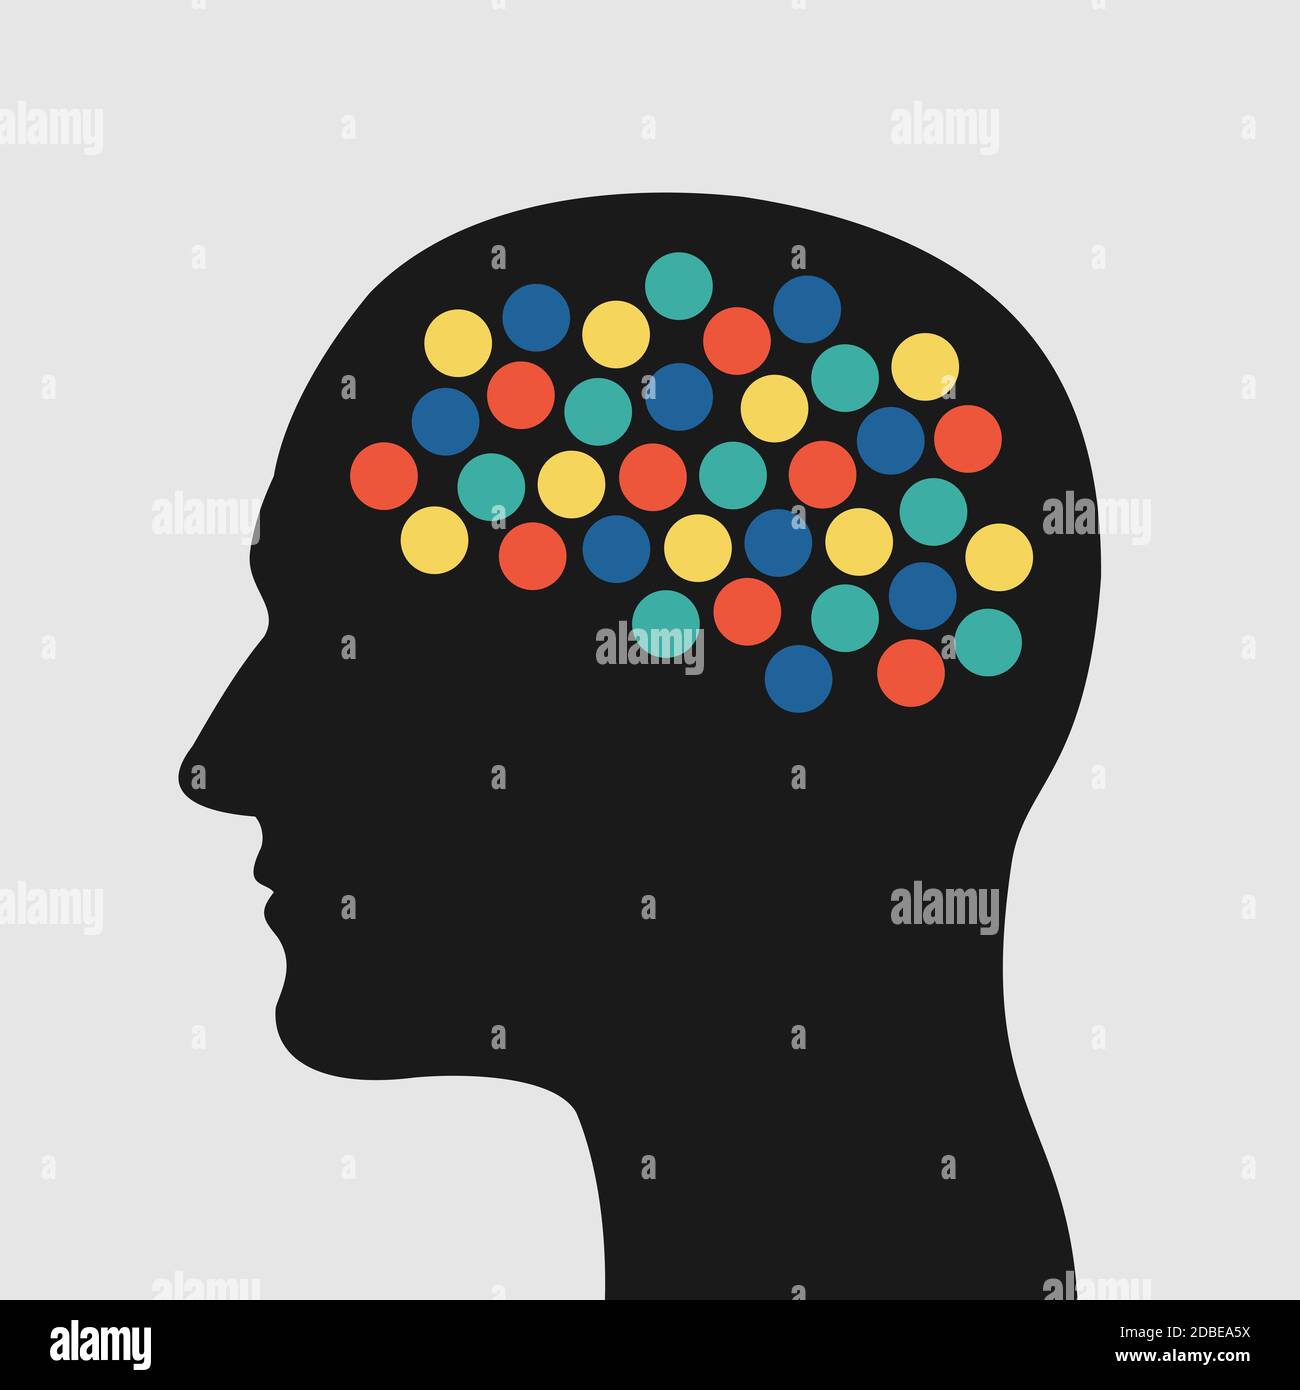 Activité cérébrale - points colorés et points dans la tête comme métaphore de la créativité, la pensée hyperactive, le désordre mental et l'esprit chaotique. Vecteur illust Banque D'Images